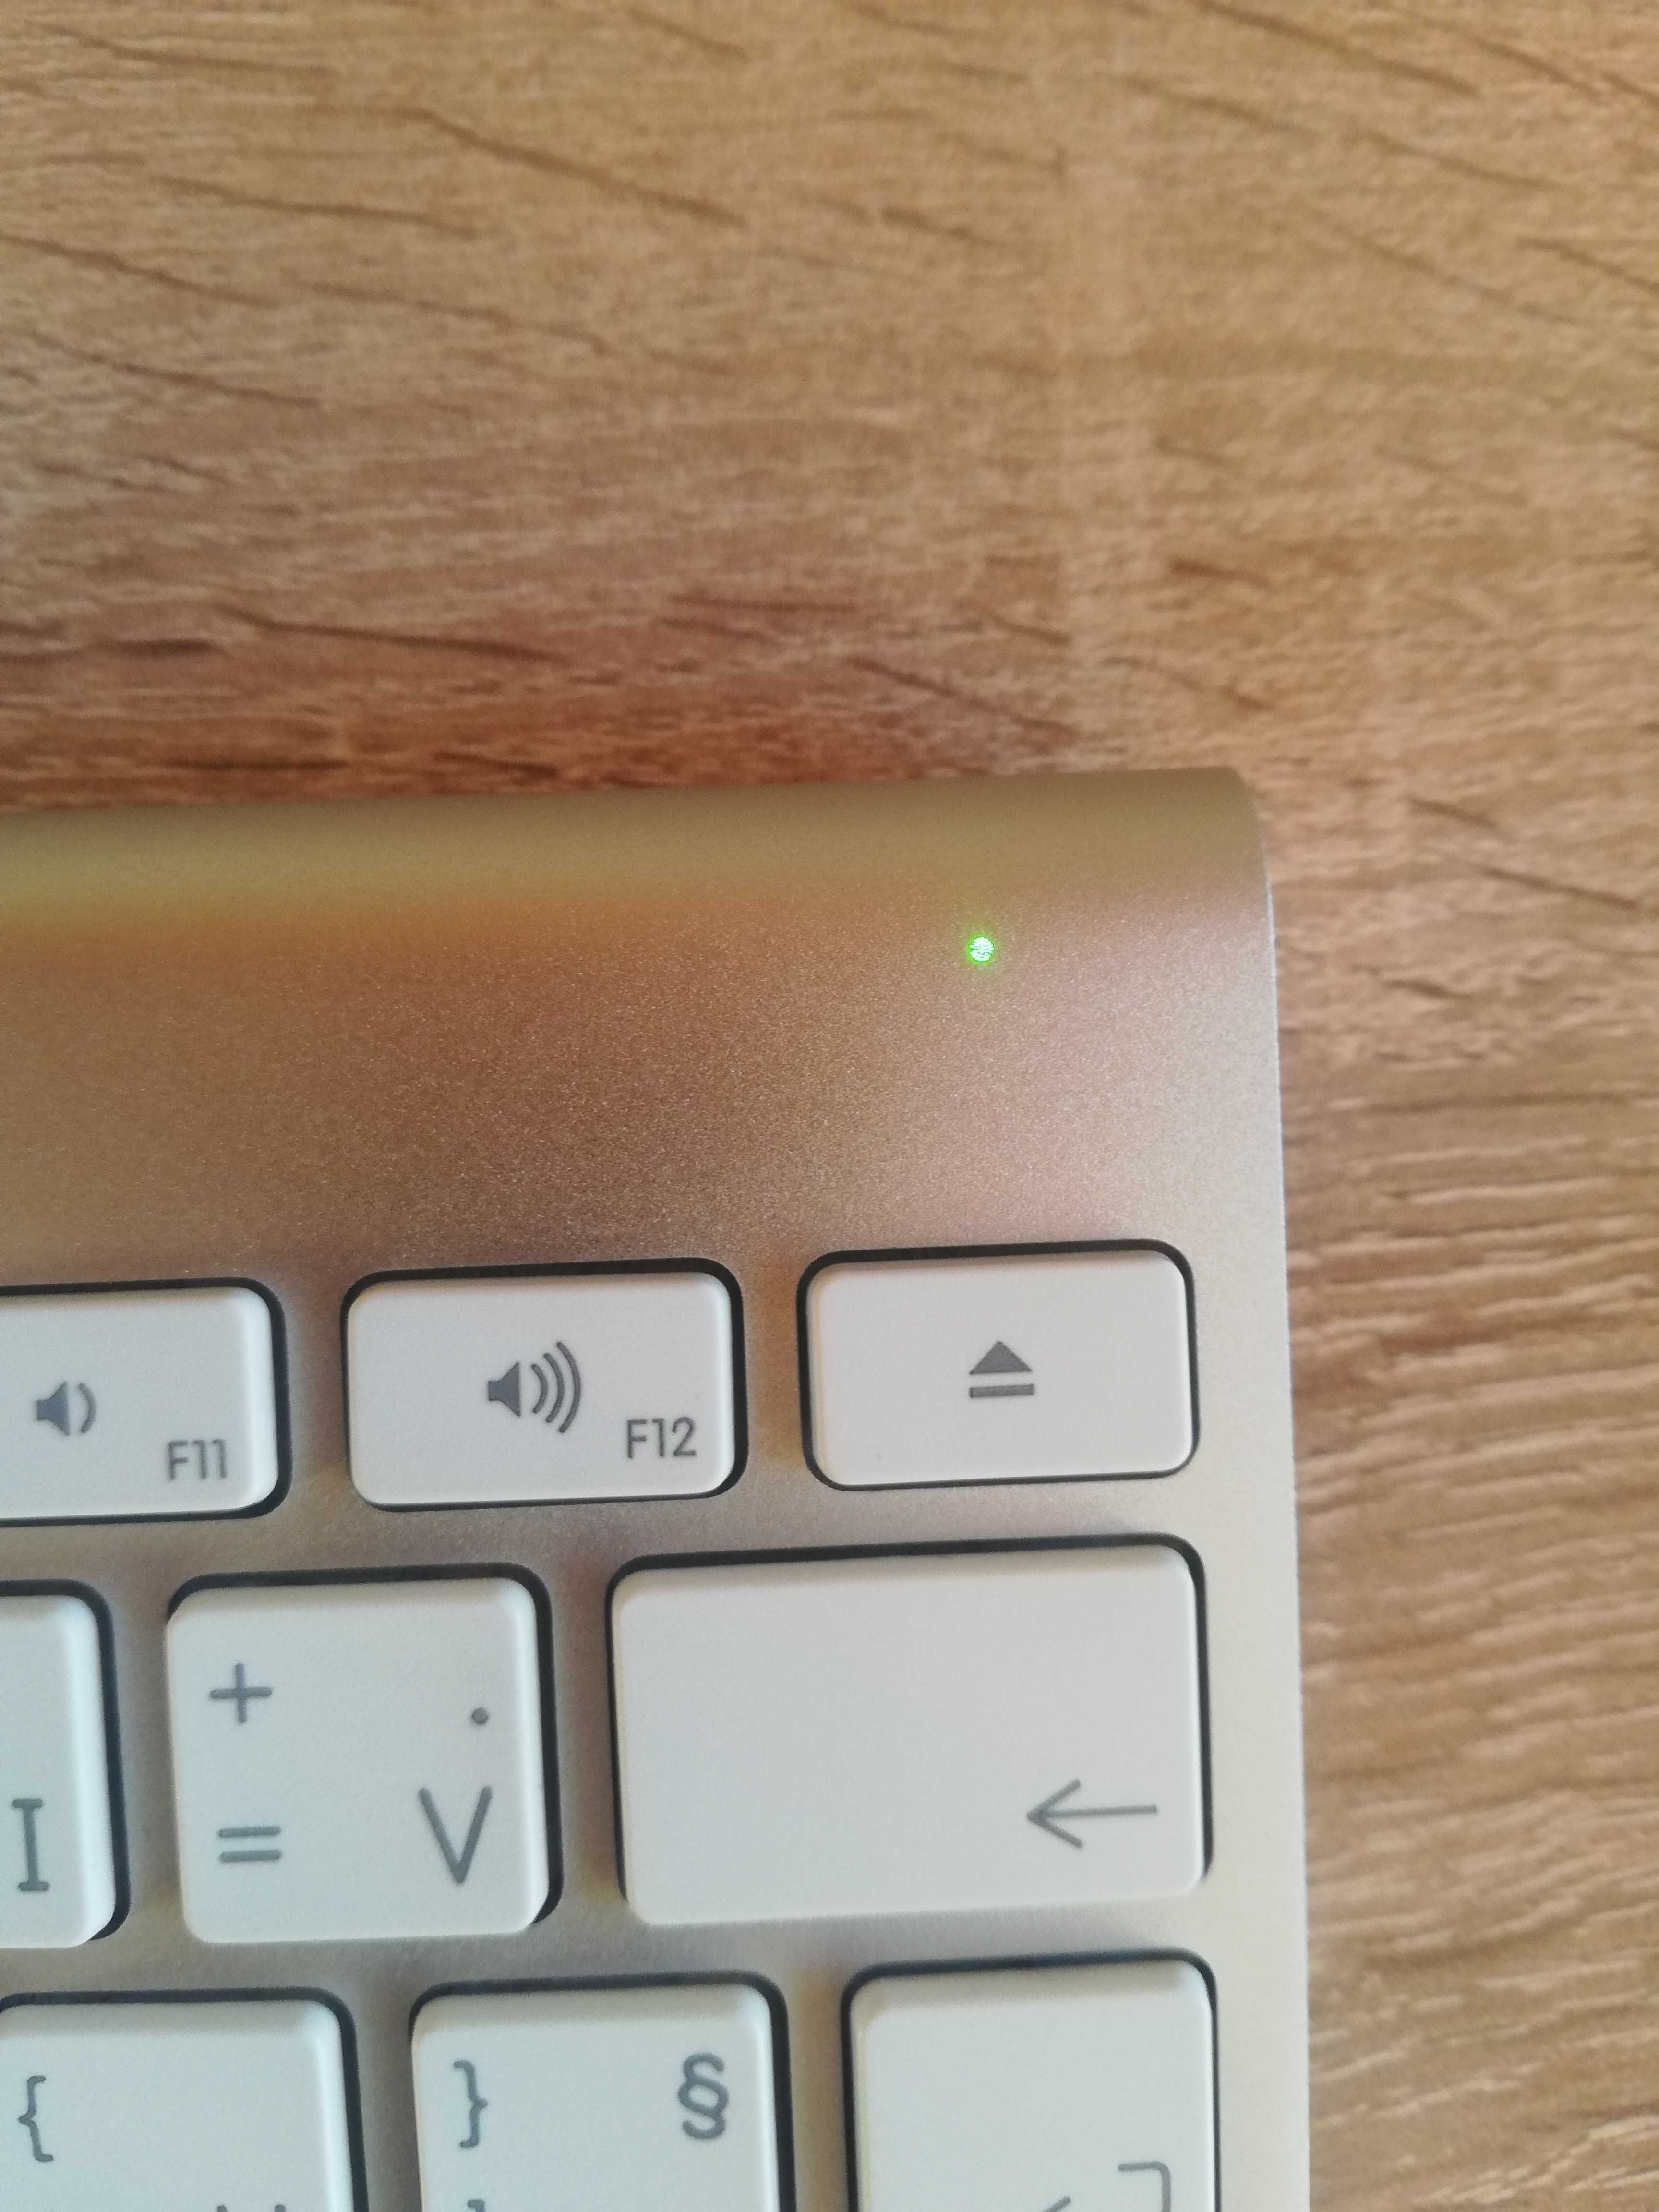 Apple Magic Mouse мишка и клавиатура А1314 A1296